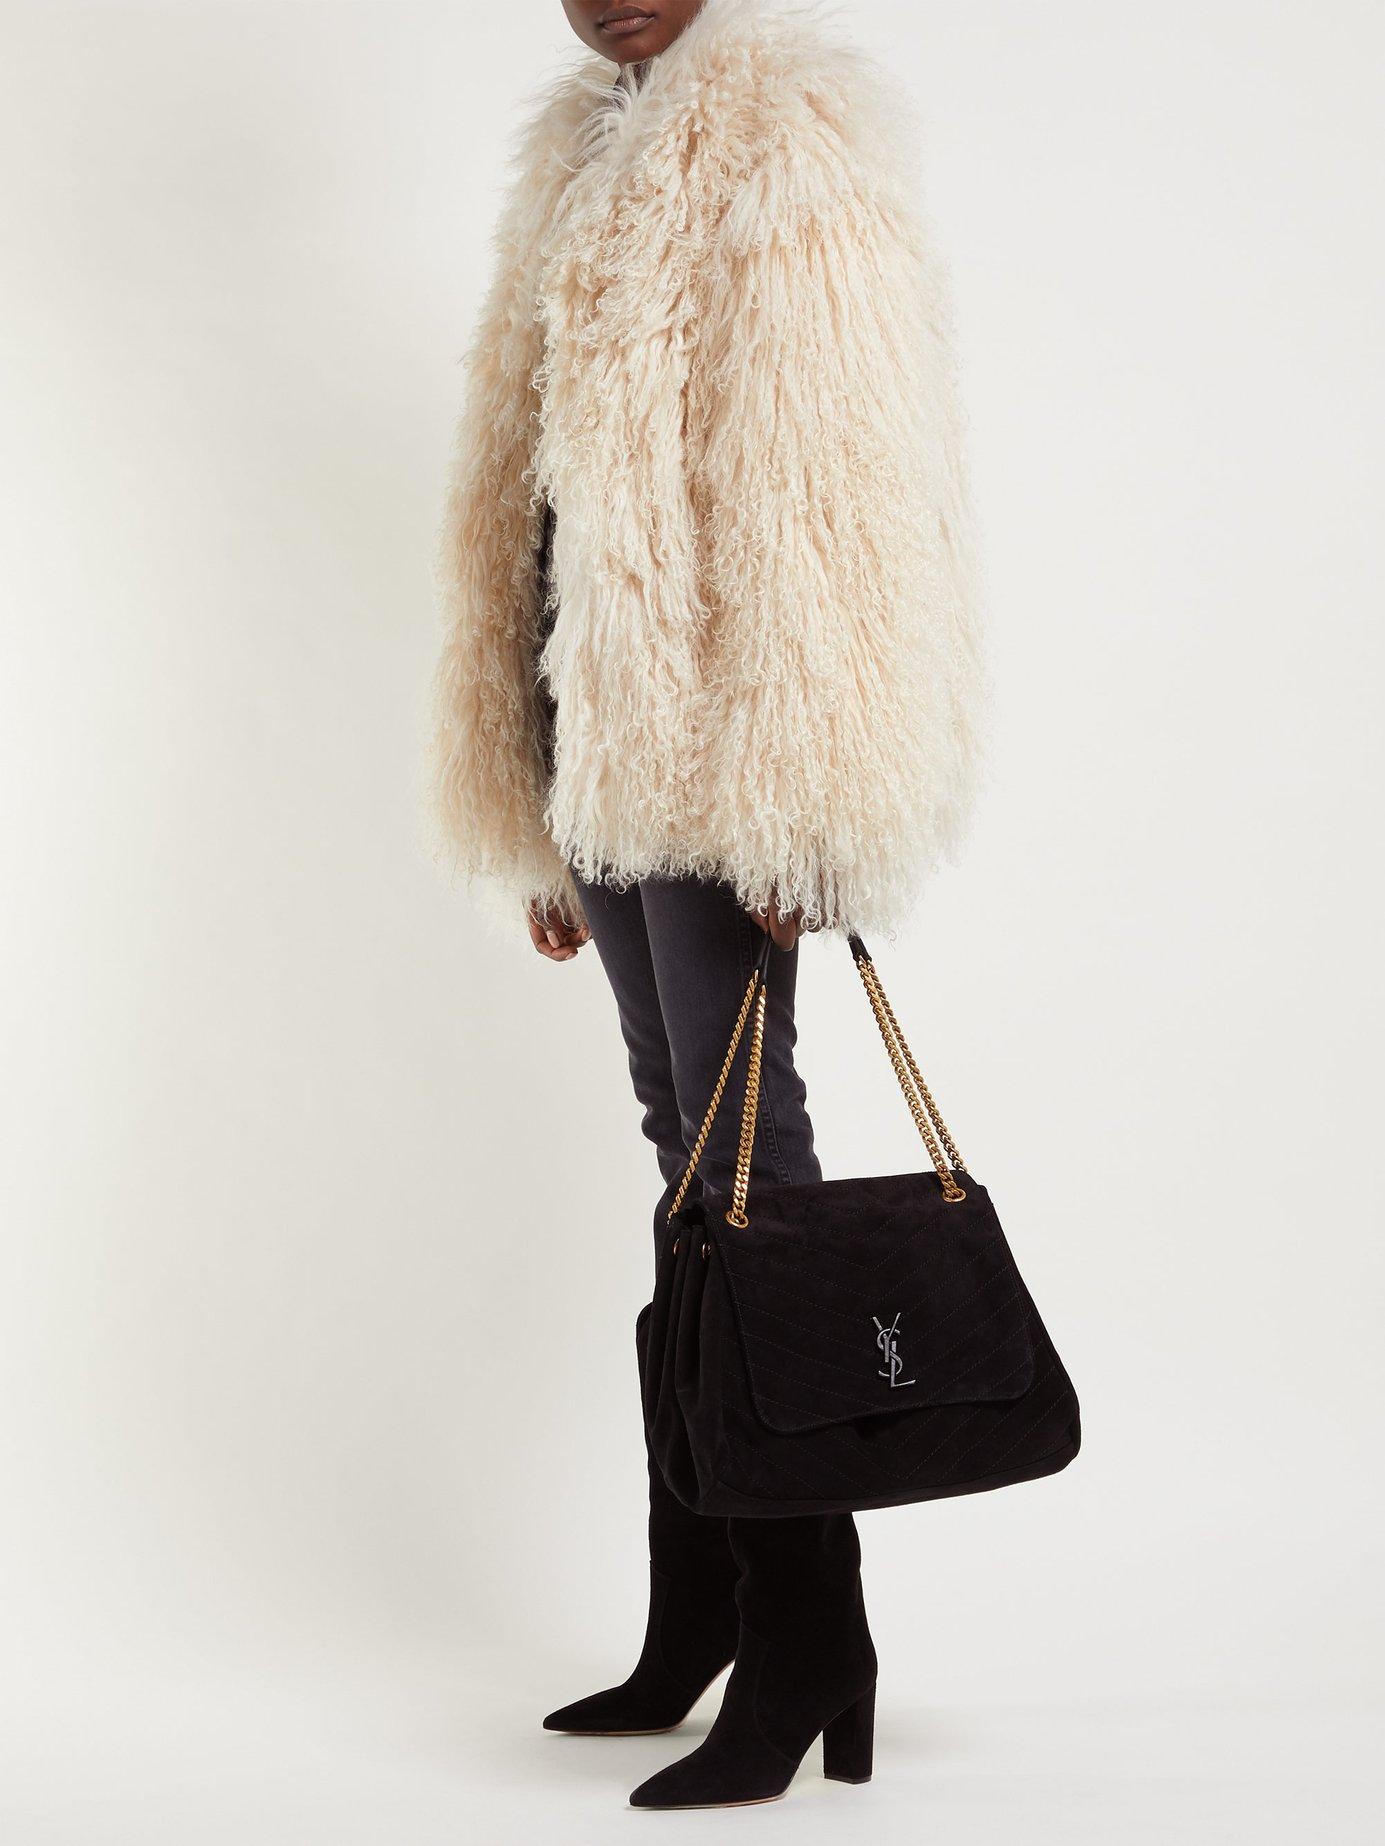 Saint Laurent Nolita Large Quilted Suede Shoulder Bag in Black - Lyst